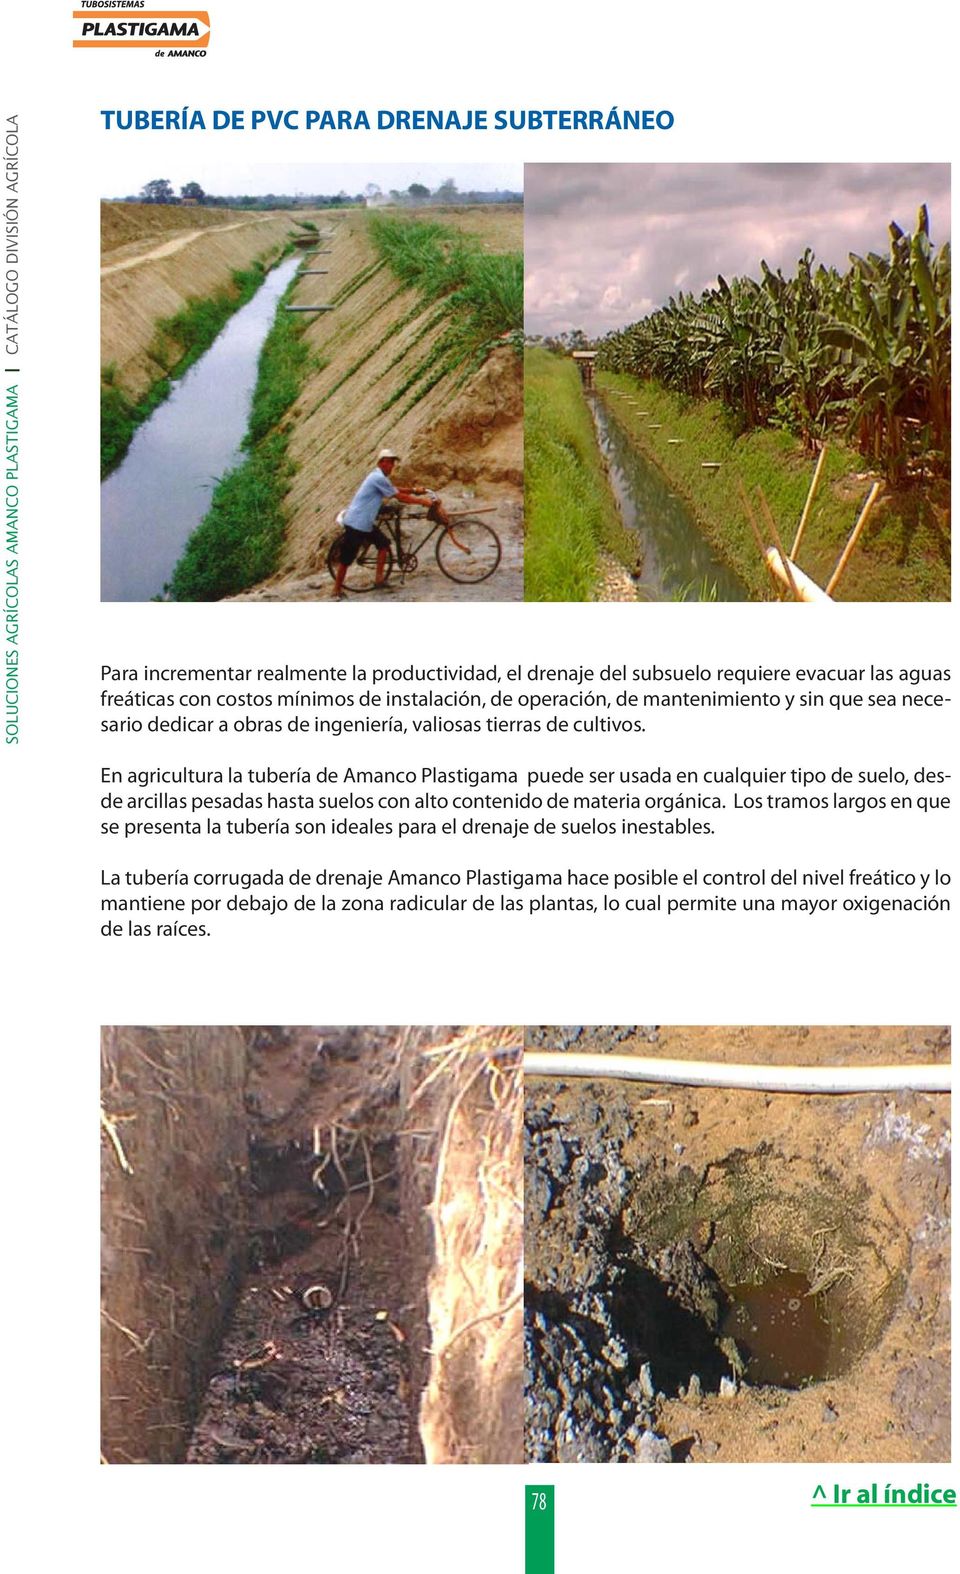 En agricultura la tubería de Amanco Plastigama puede ser usada en cualquier tipo de suelo, desde arcillas pesadas hasta suelos con alto contenido de materia orgánica.